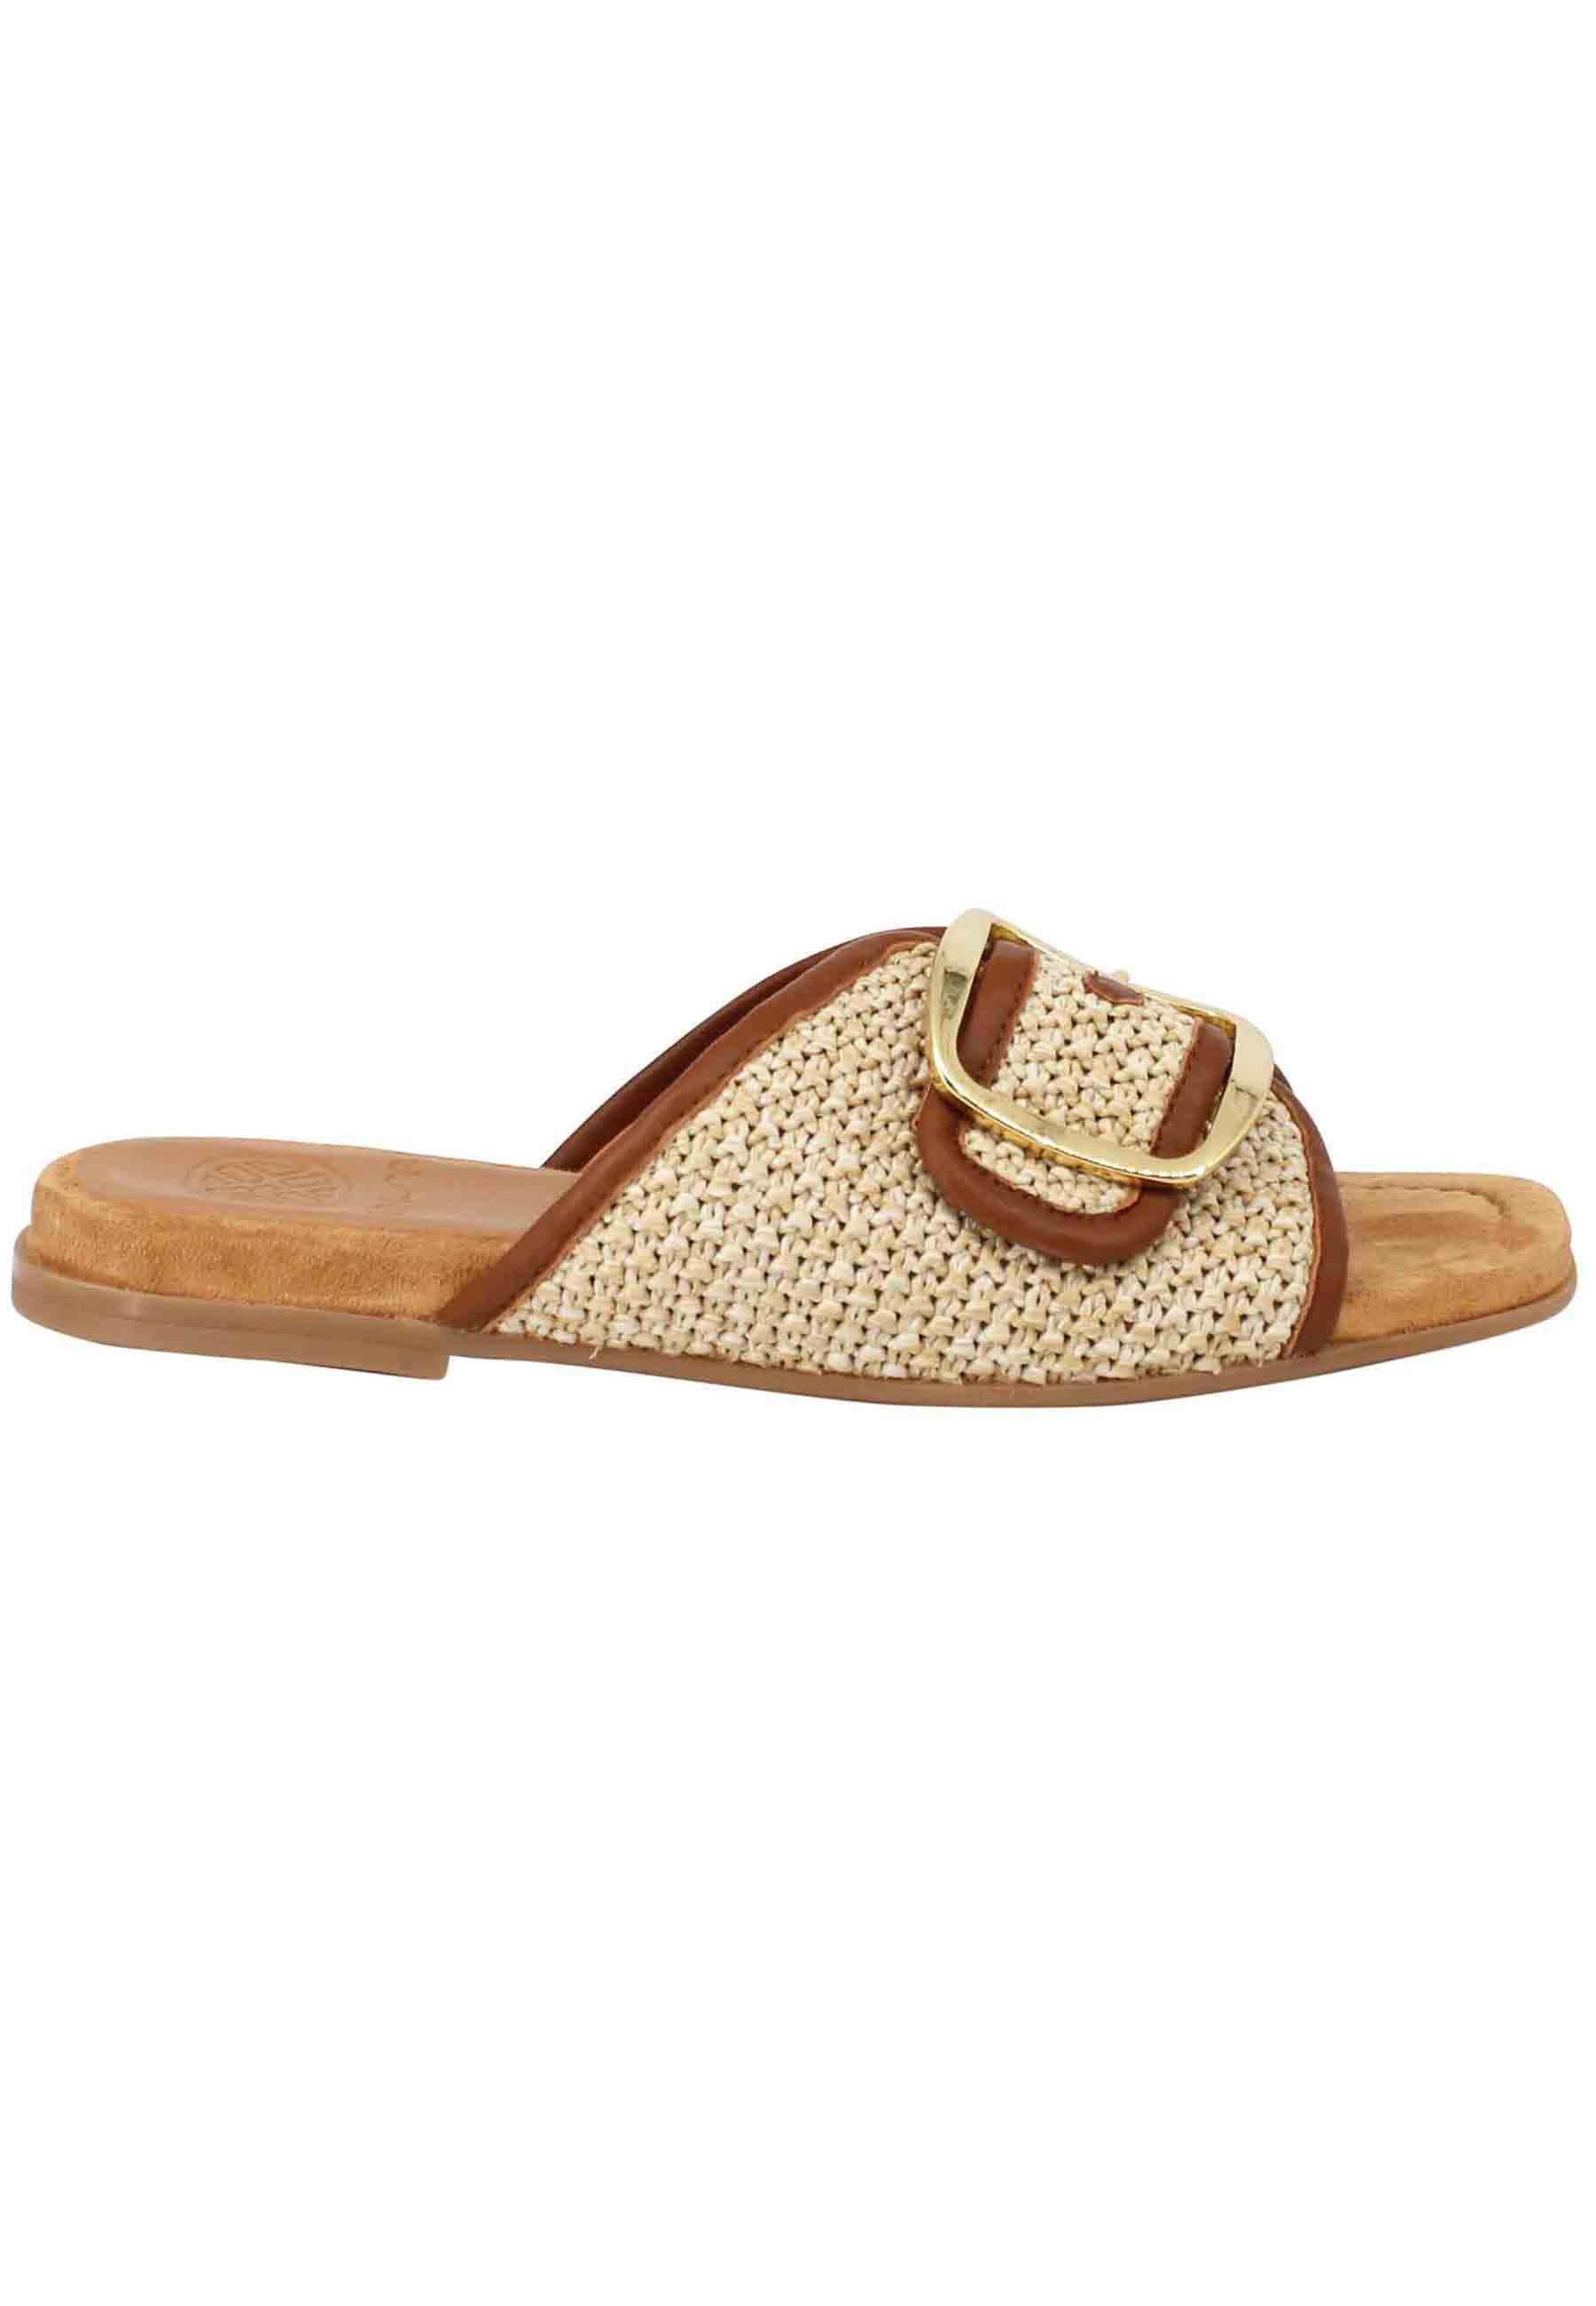 Sandales plates pour femmes en tissu naturel avec boucle dorée